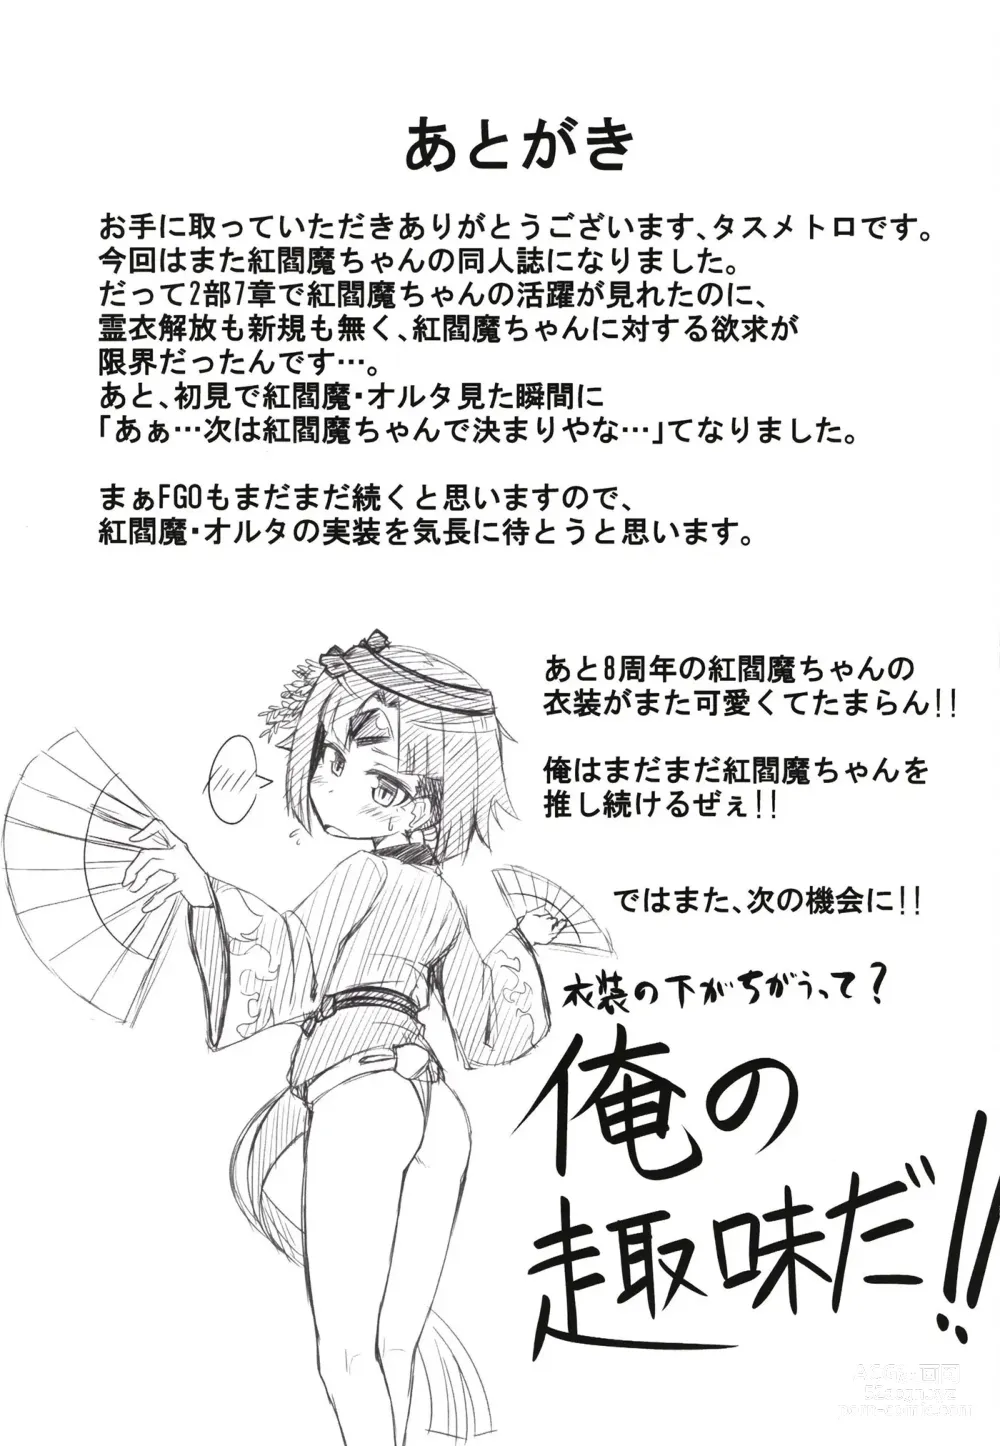 Page 23 of doujinshi Benisuzume no Ai no Su